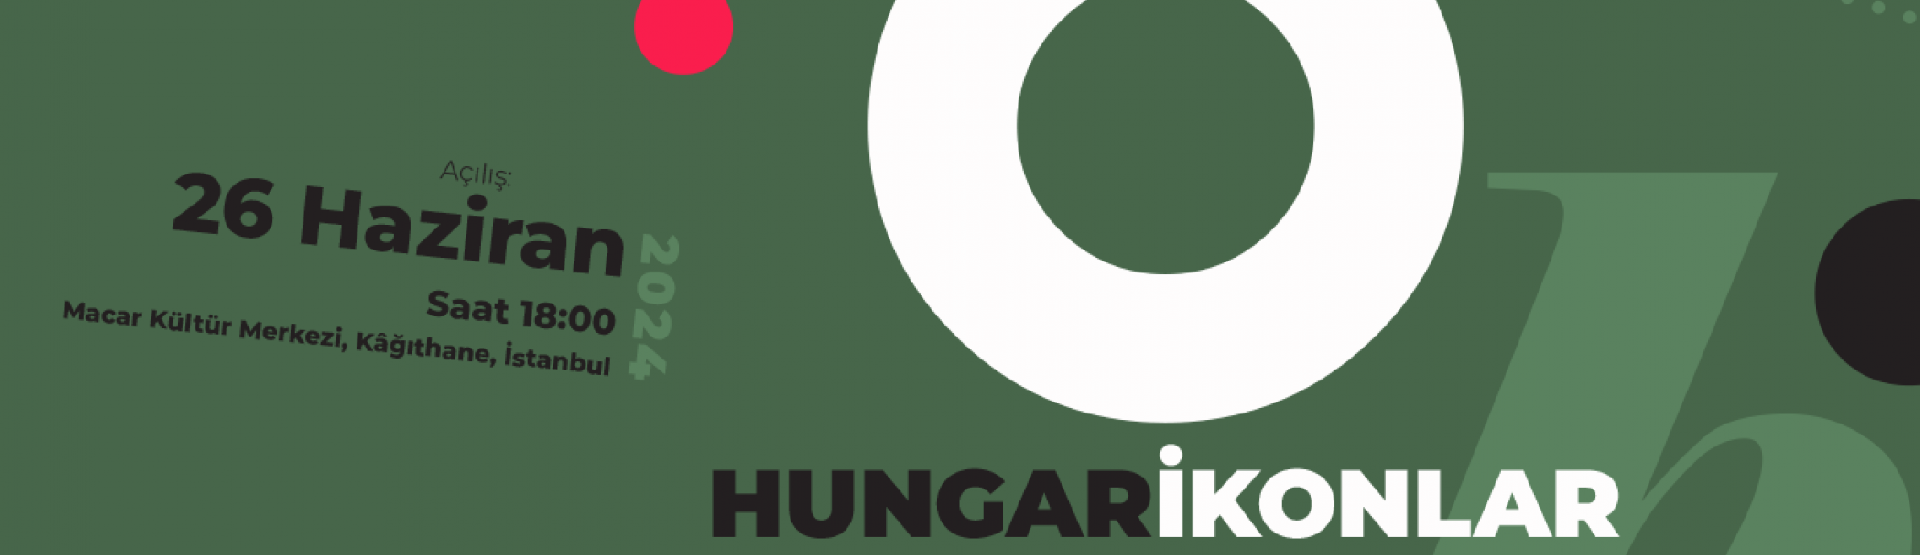 Hungarikonok